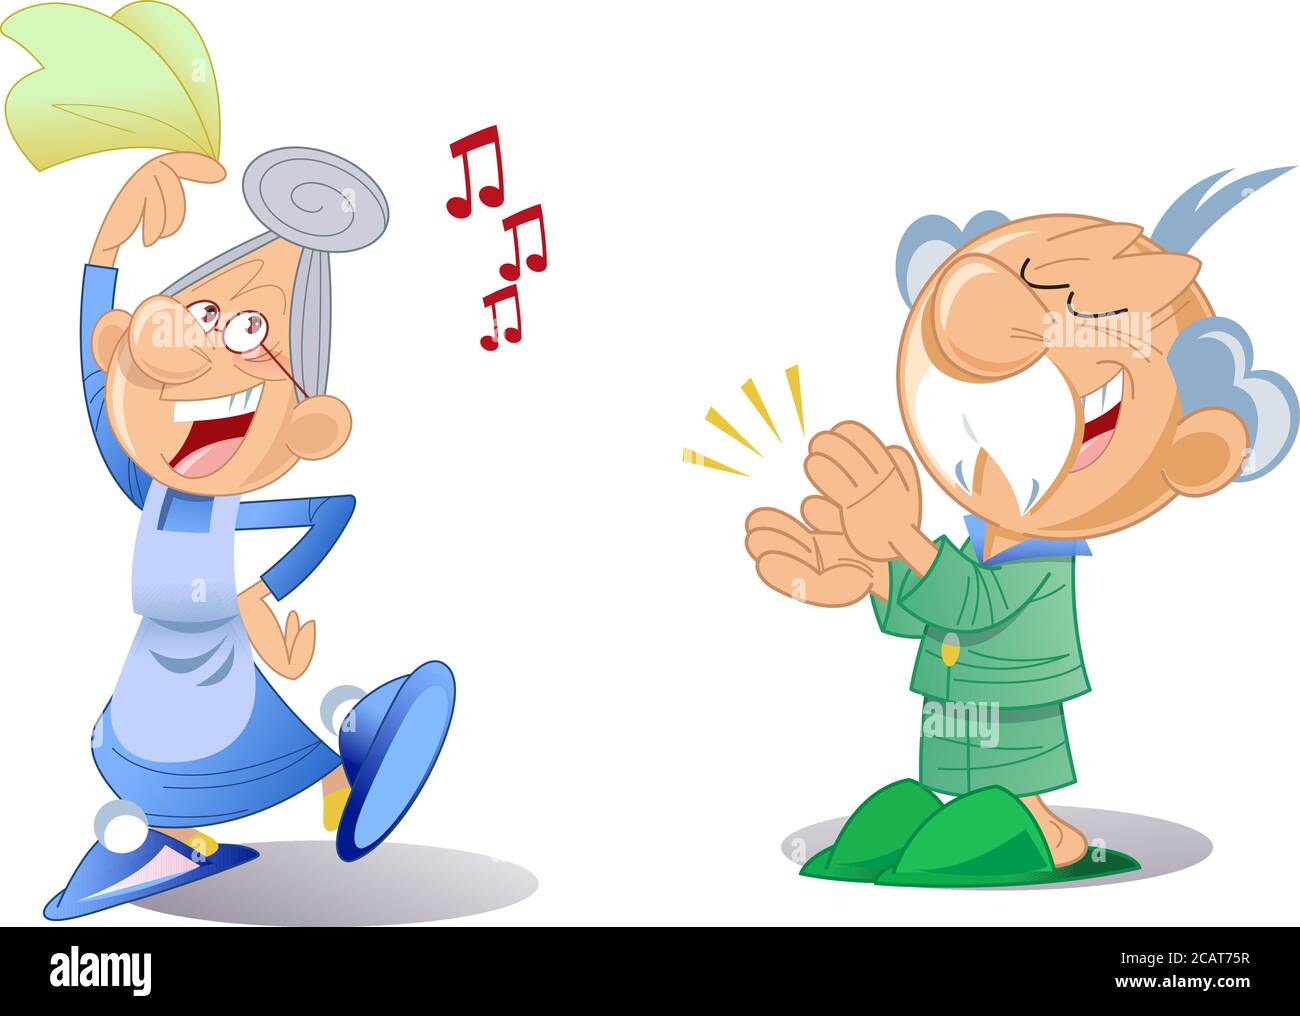 Die Vektorgrafik zeigt ein älteres aktives Paar im Cartoon-Stil. Oma tanzt und Großvater applaudiert ihr. Stock Vektor